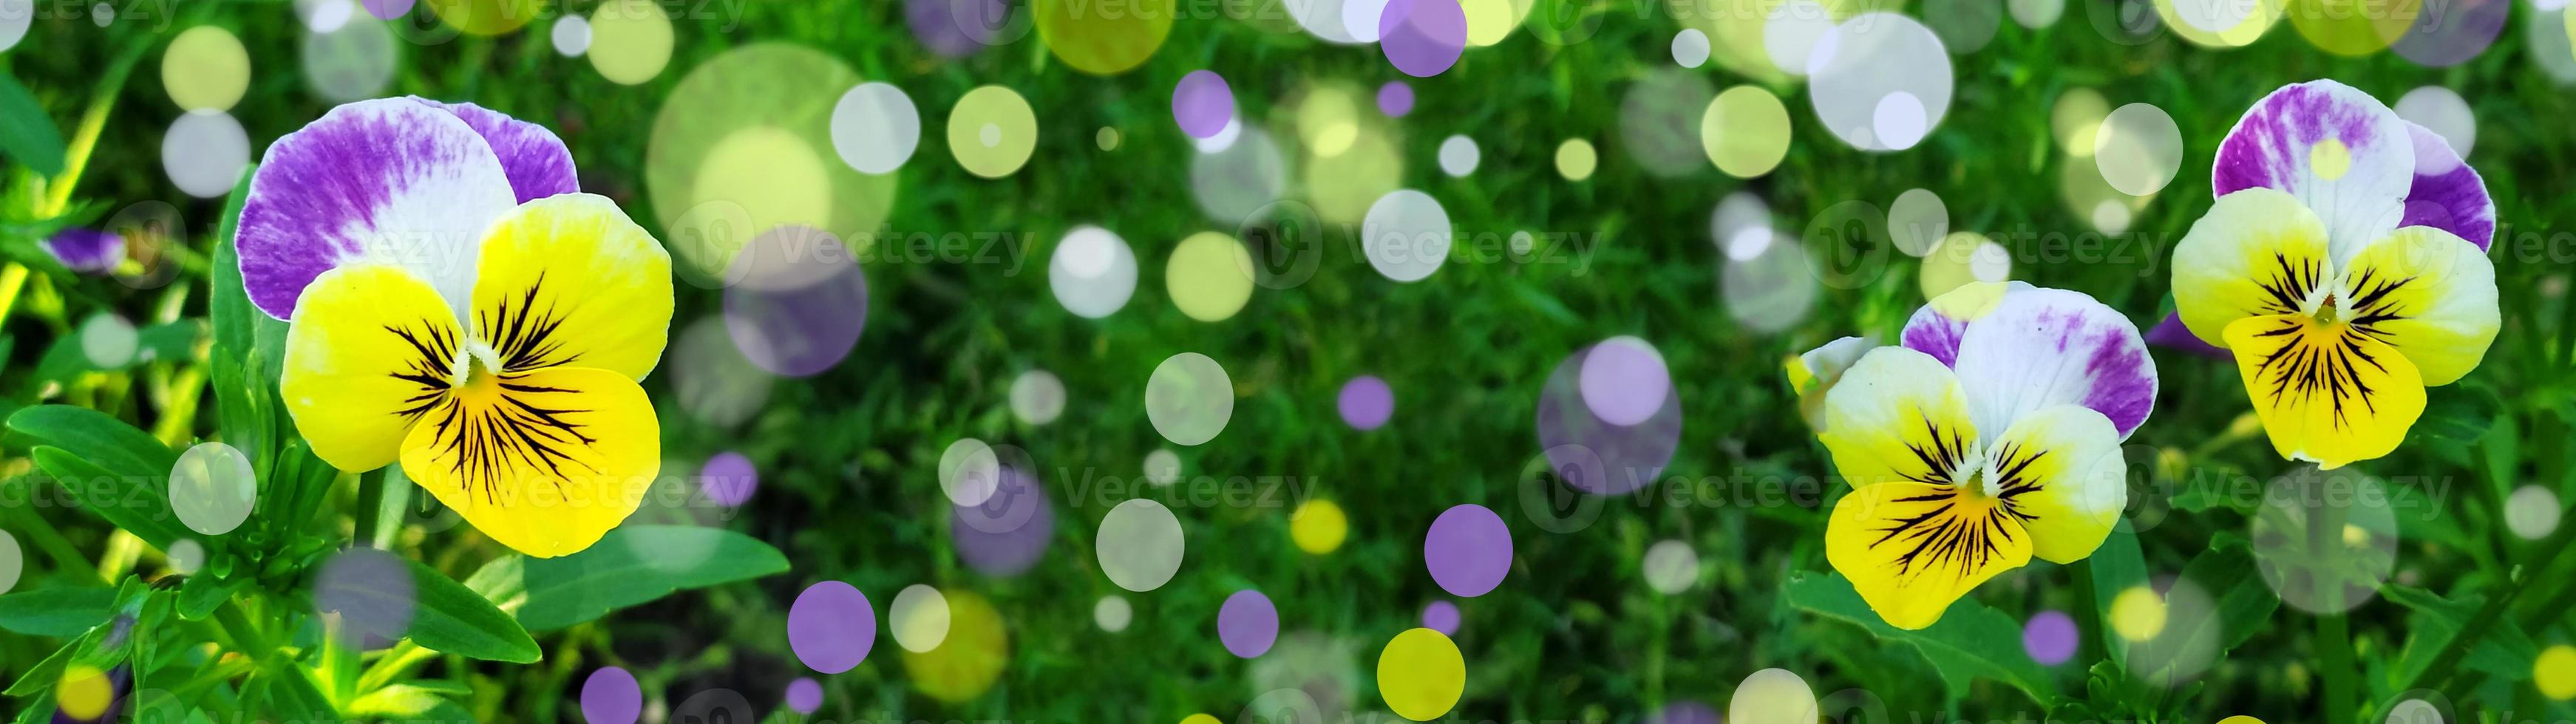 viooltjes op een achtergrond van groen gebladerte. foto